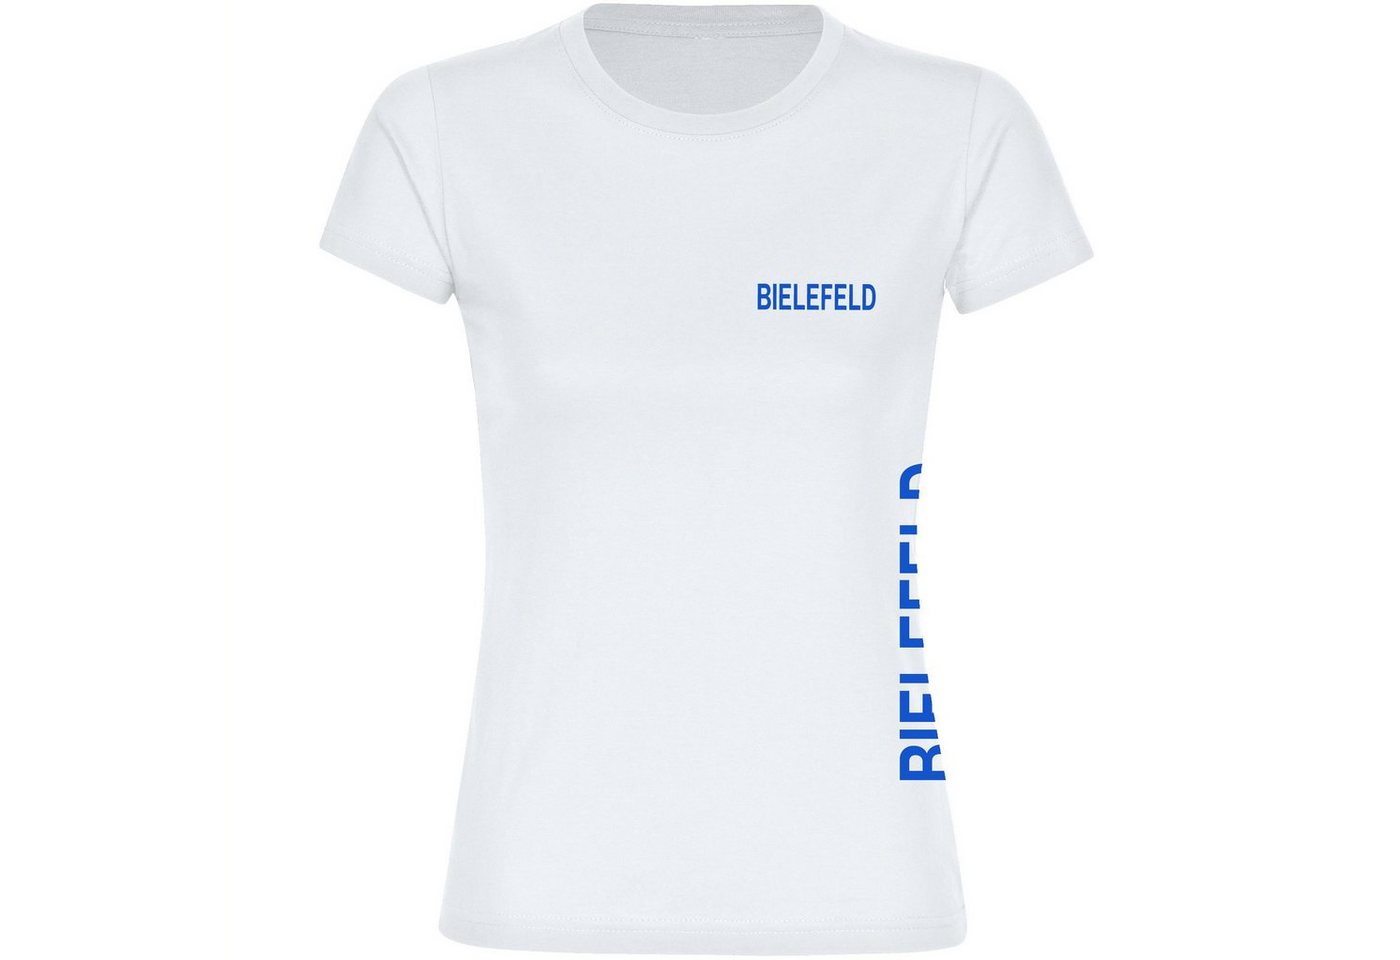 multifanshop T-Shirt Damen Bielefeld - Brust & Seite - Frauen von multifanshop